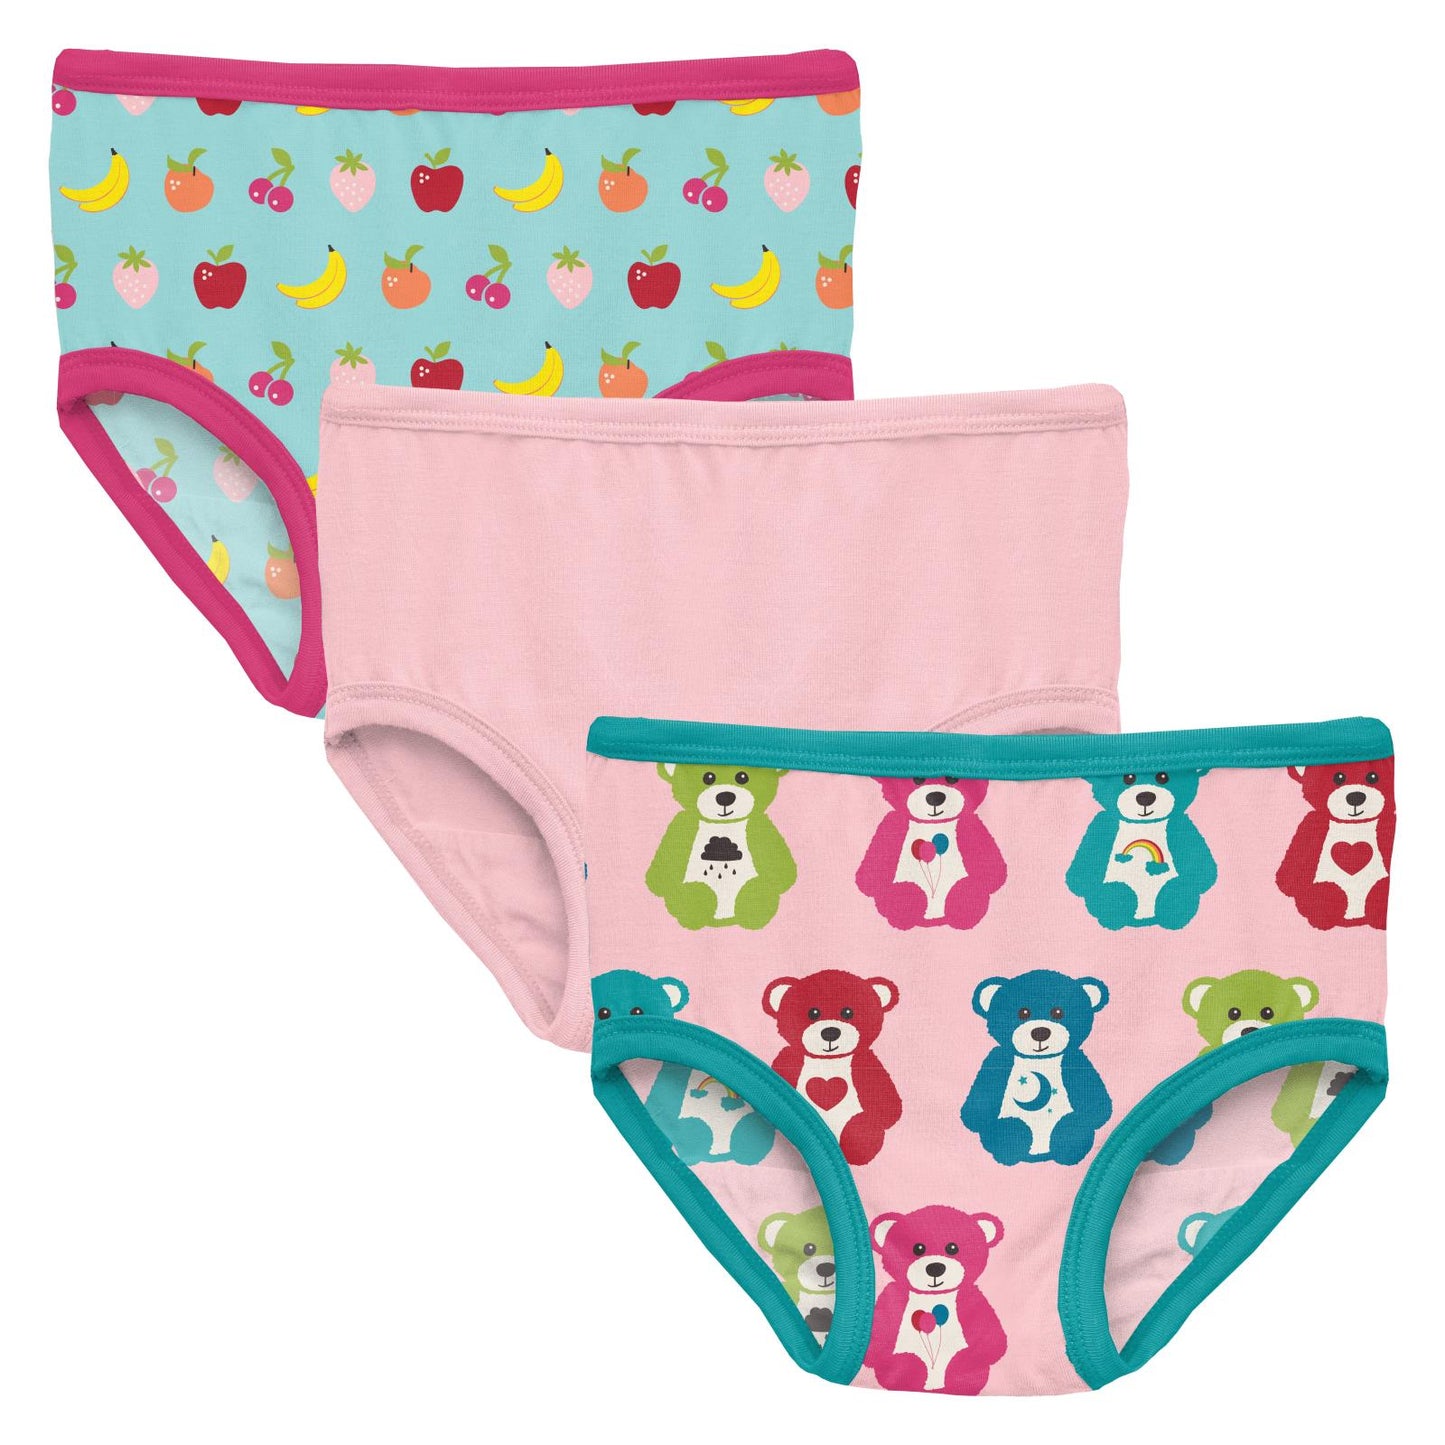 Kickee Pants Print Girl's Underwear Set of 3 in Lotus, Sprinkles & Rainbow Hearts